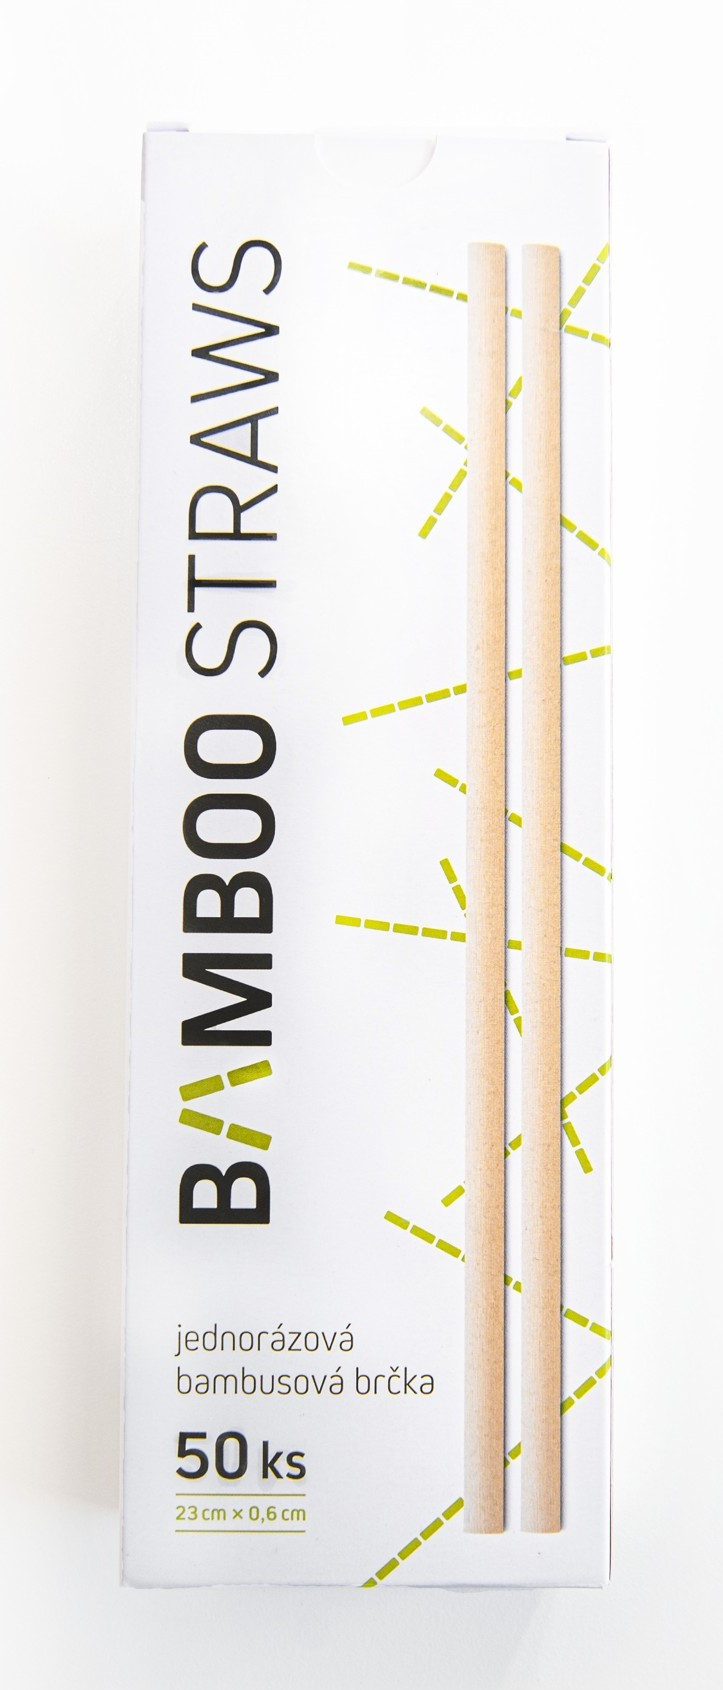 Jednorázová bambusová brčka 50ks